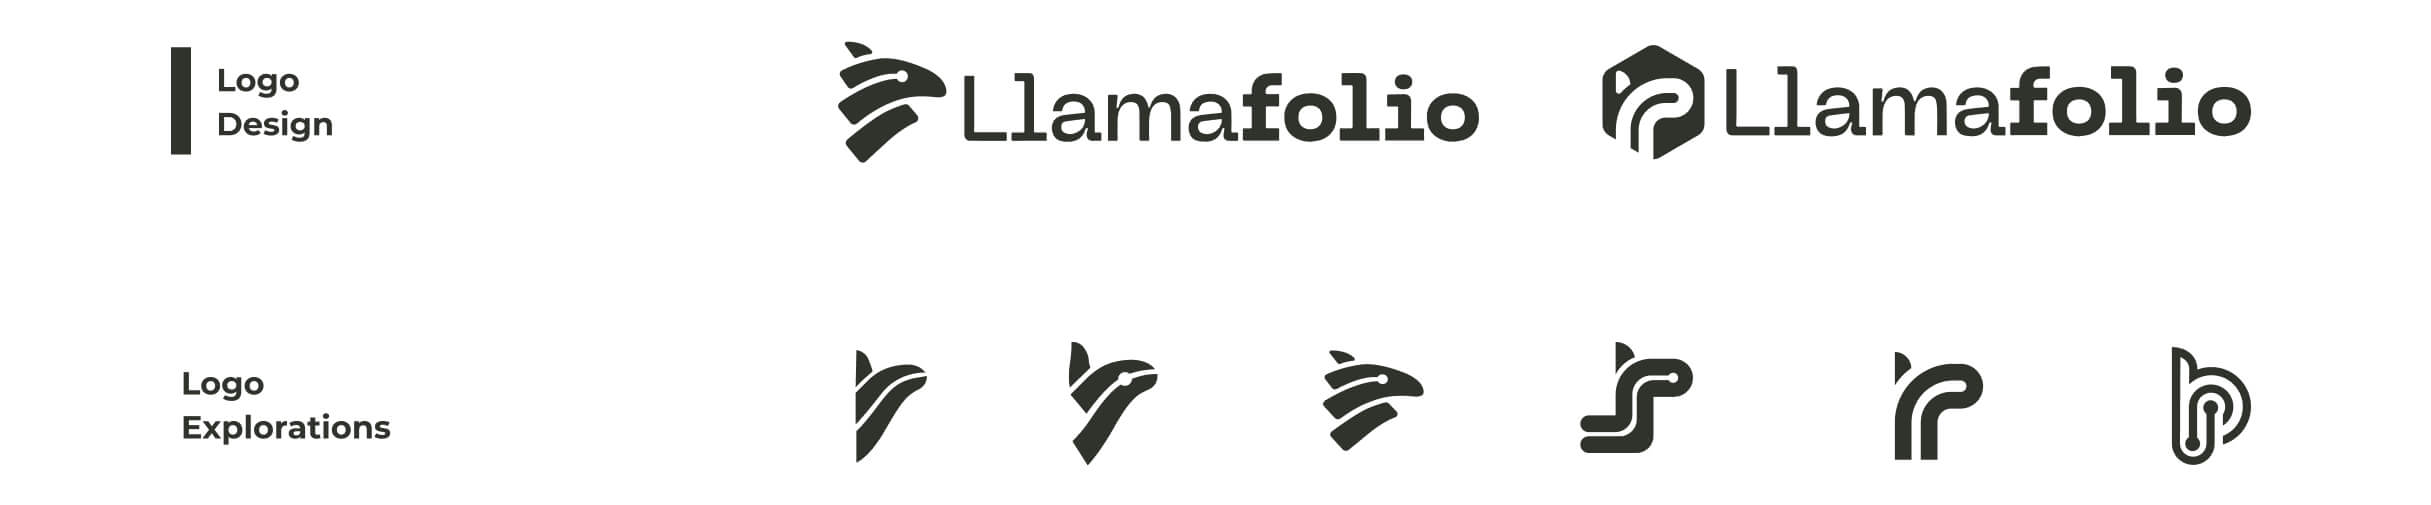 LlamaFolio